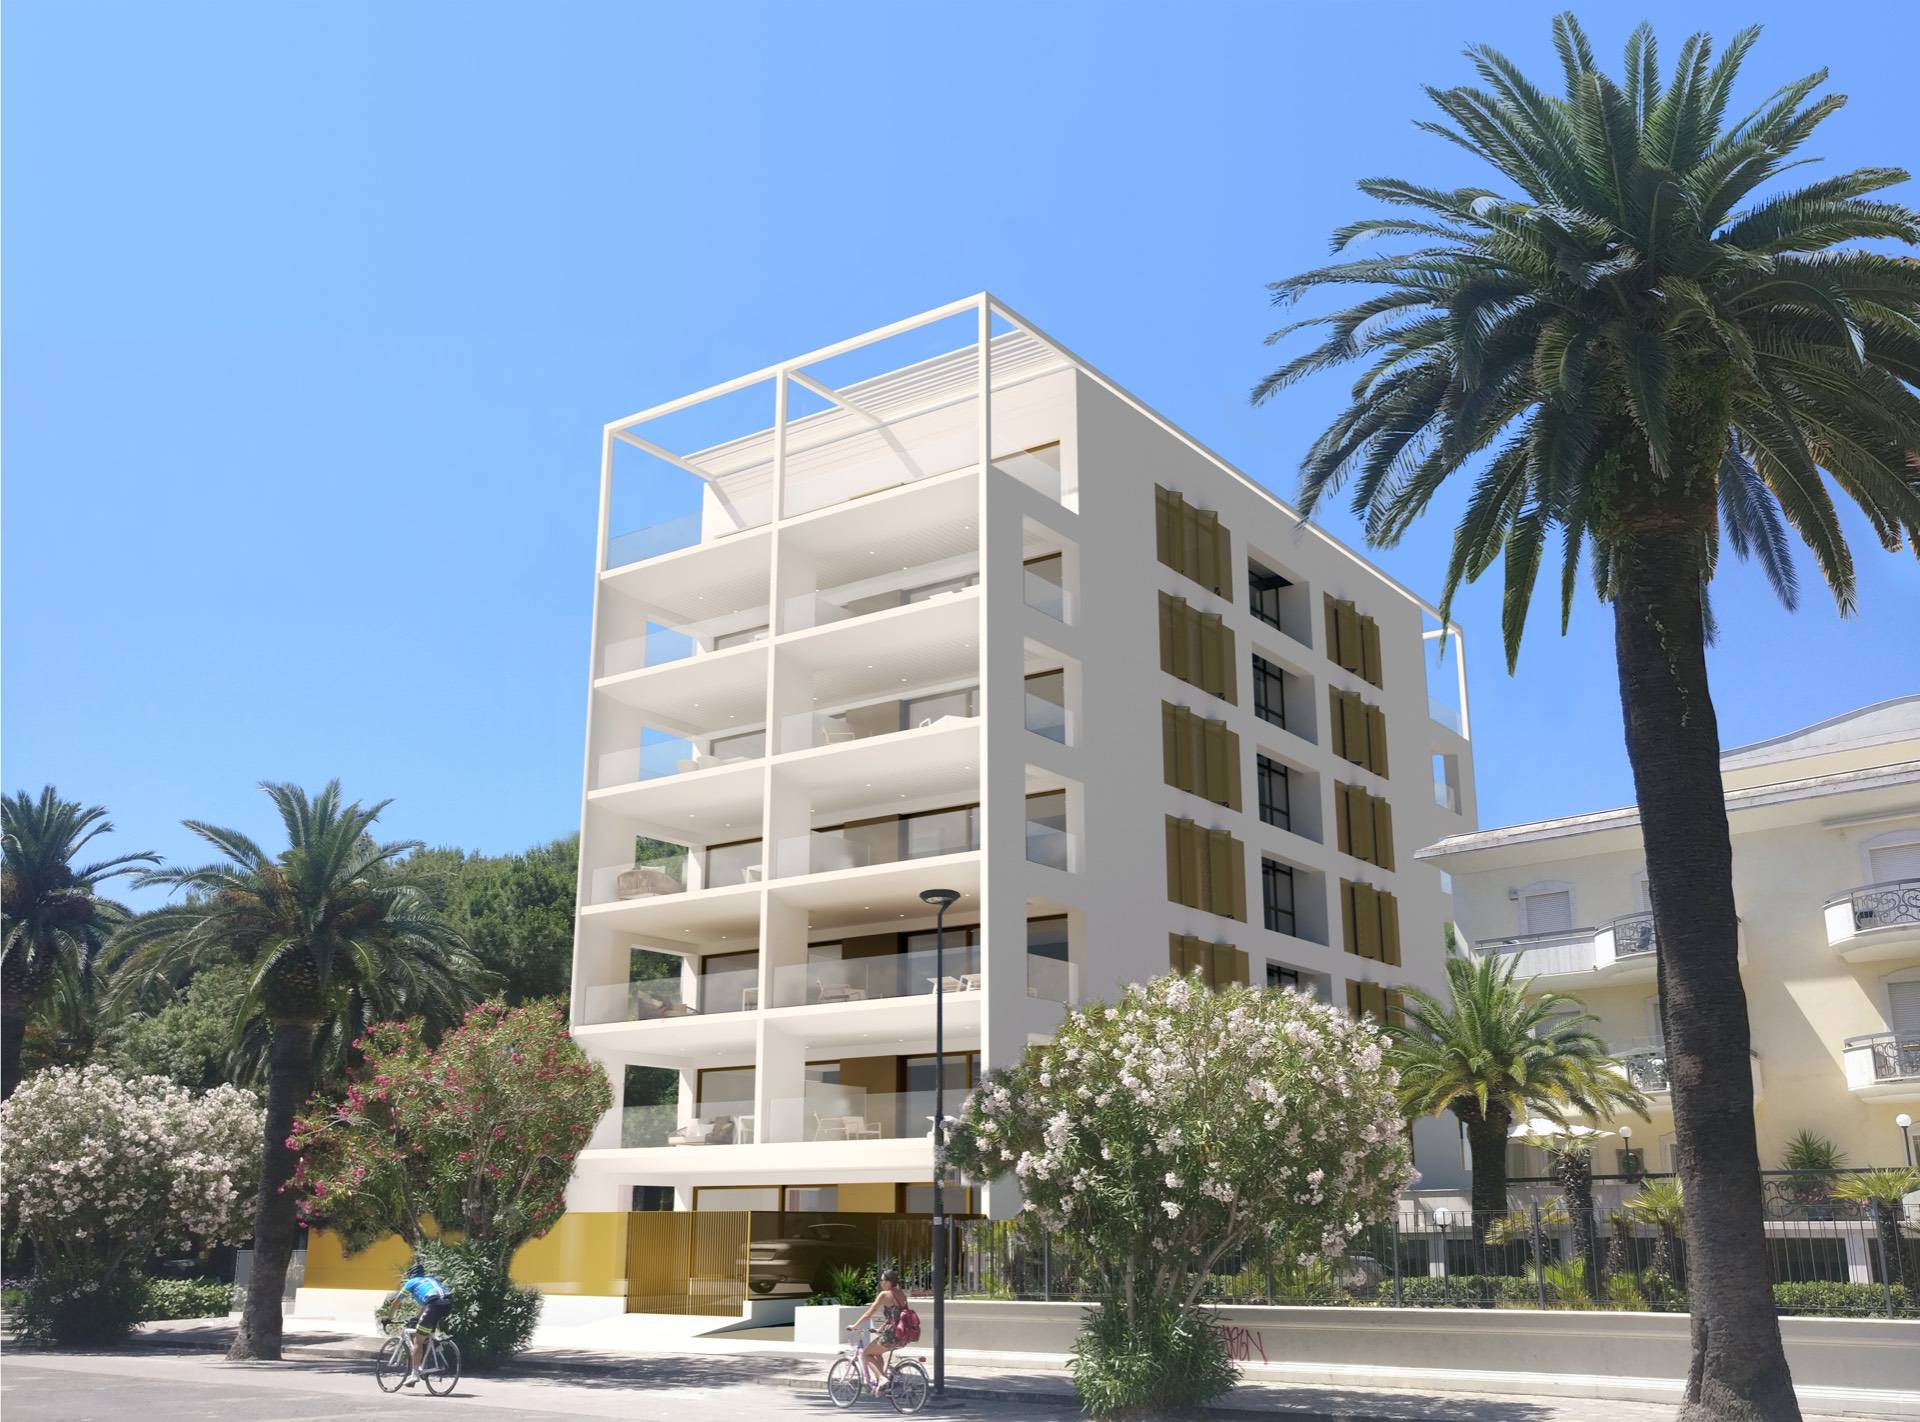 Appartamento in vendita a San Benedetto del Tronto, 3 locali, zona Località: Centralissima, prezzo € 413.400 | PortaleAgenzieImmobiliari.it